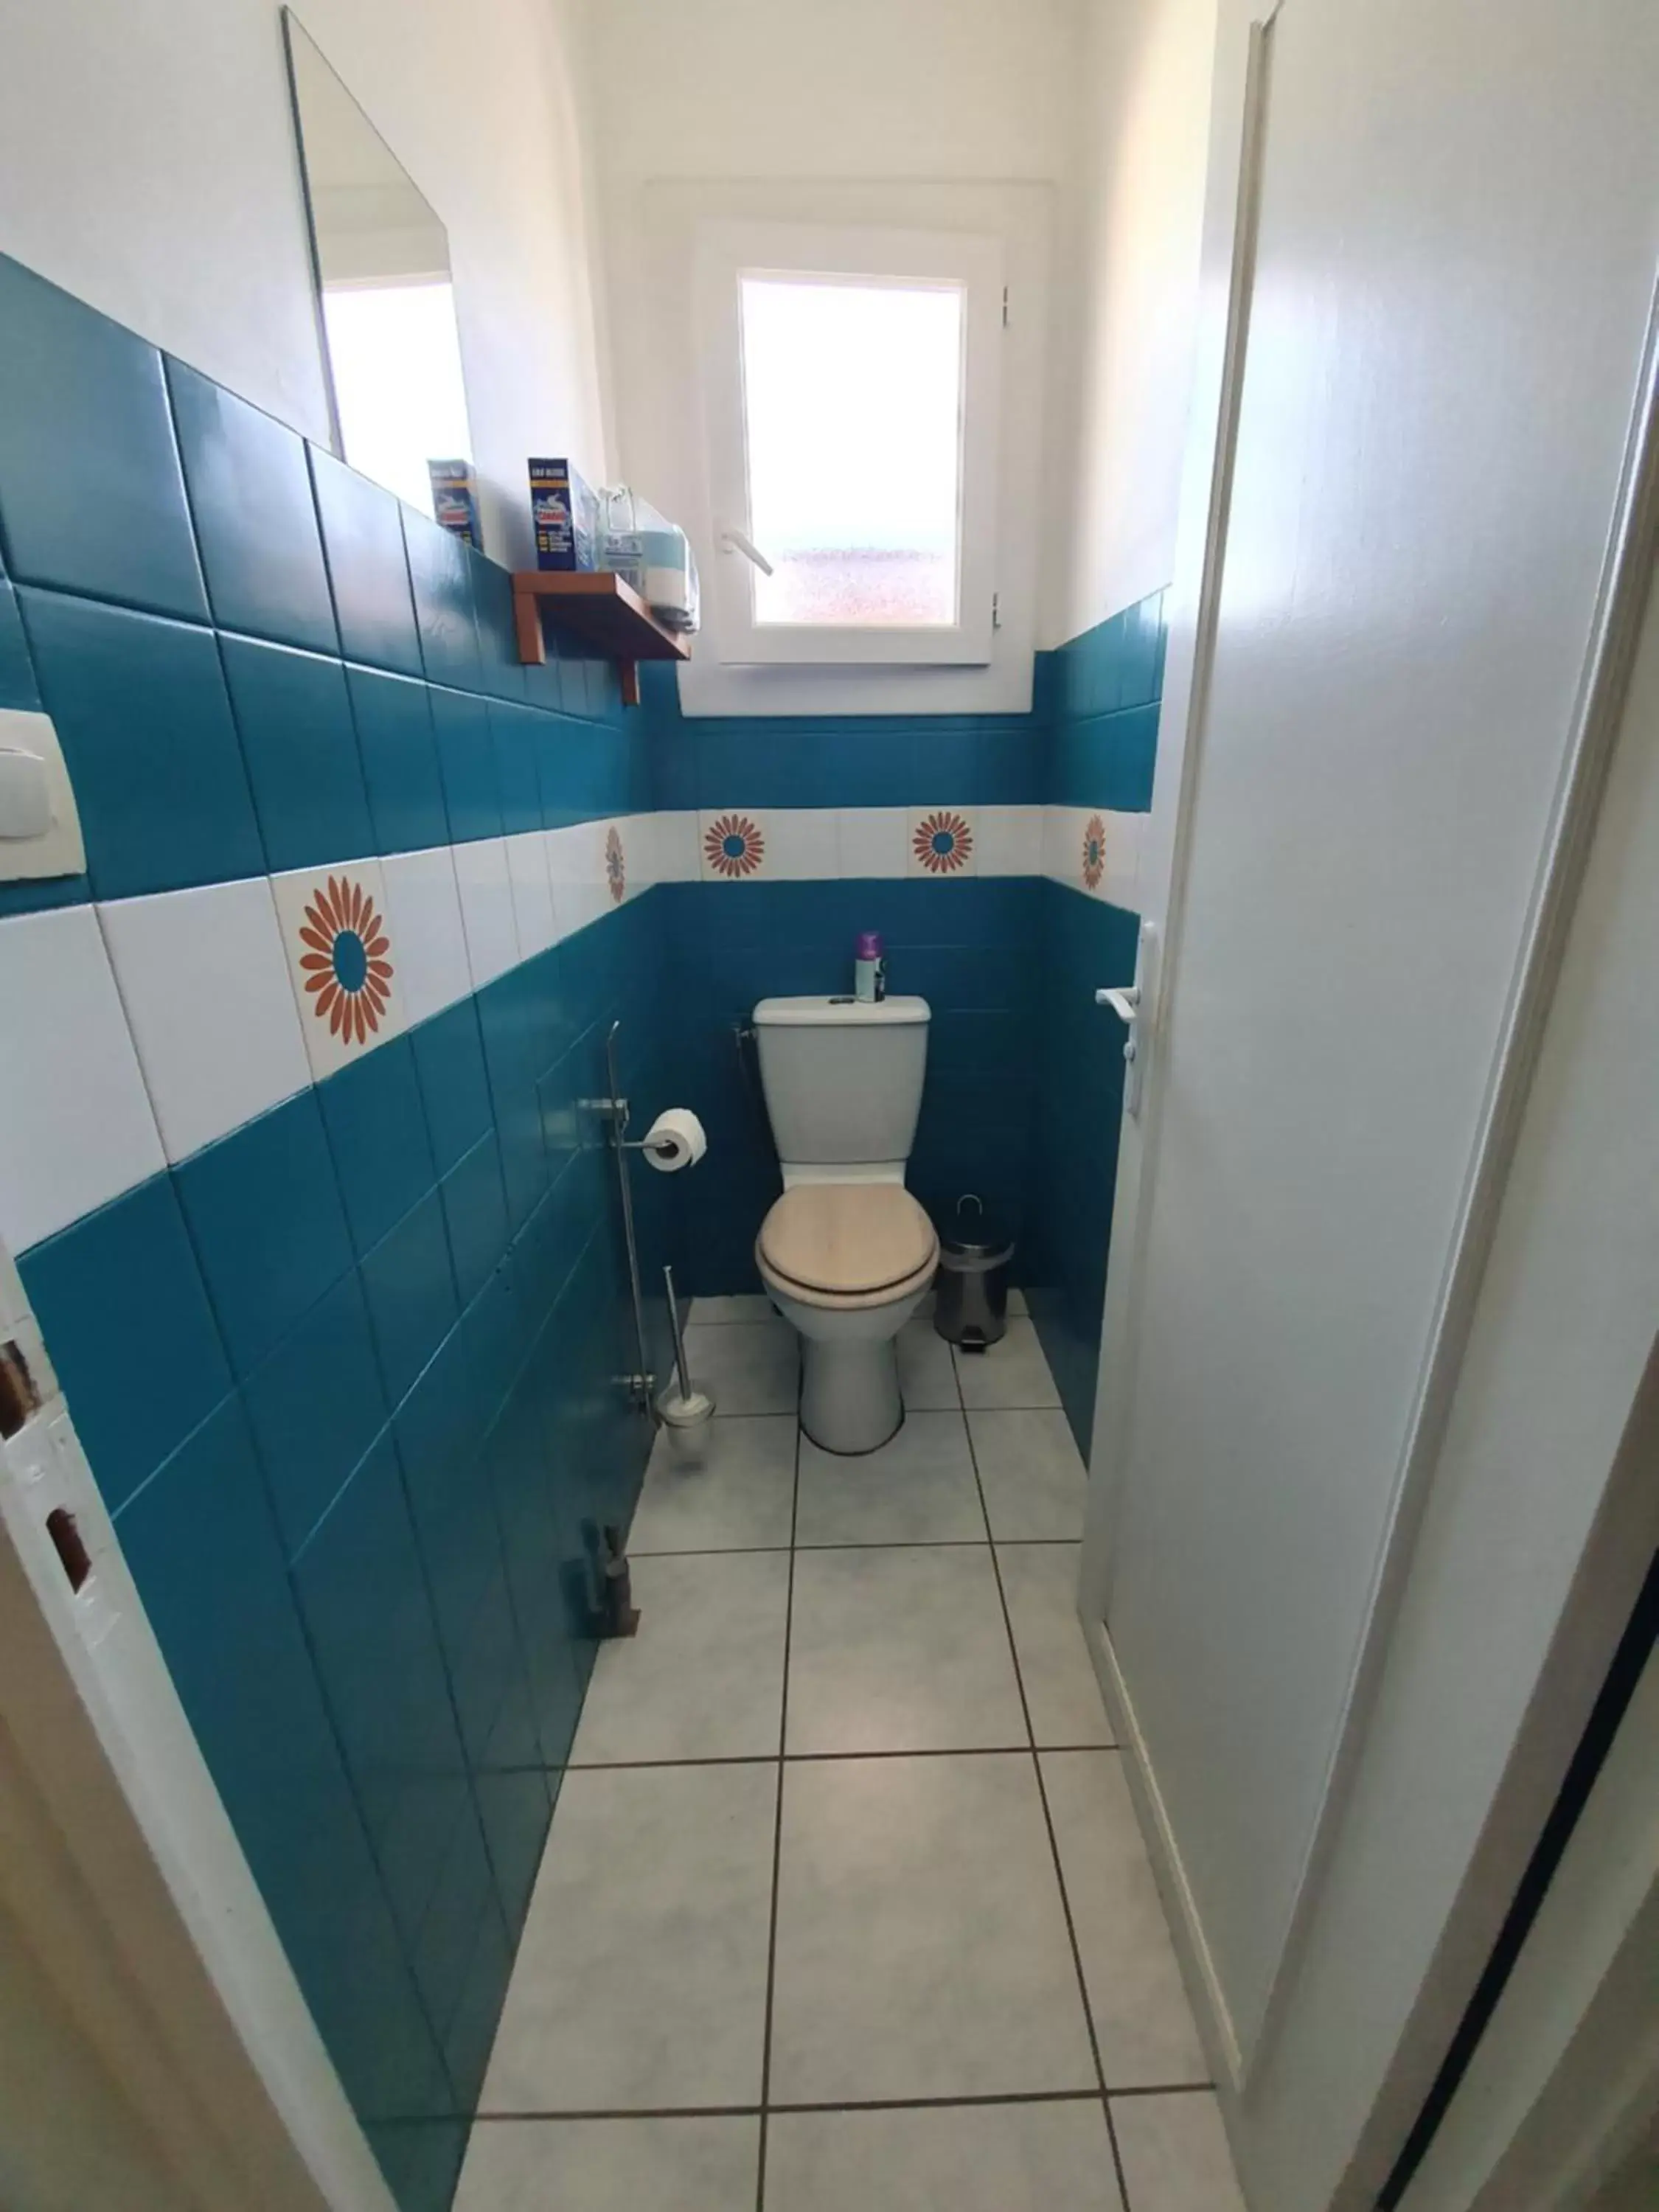 Bathroom in Verolithos